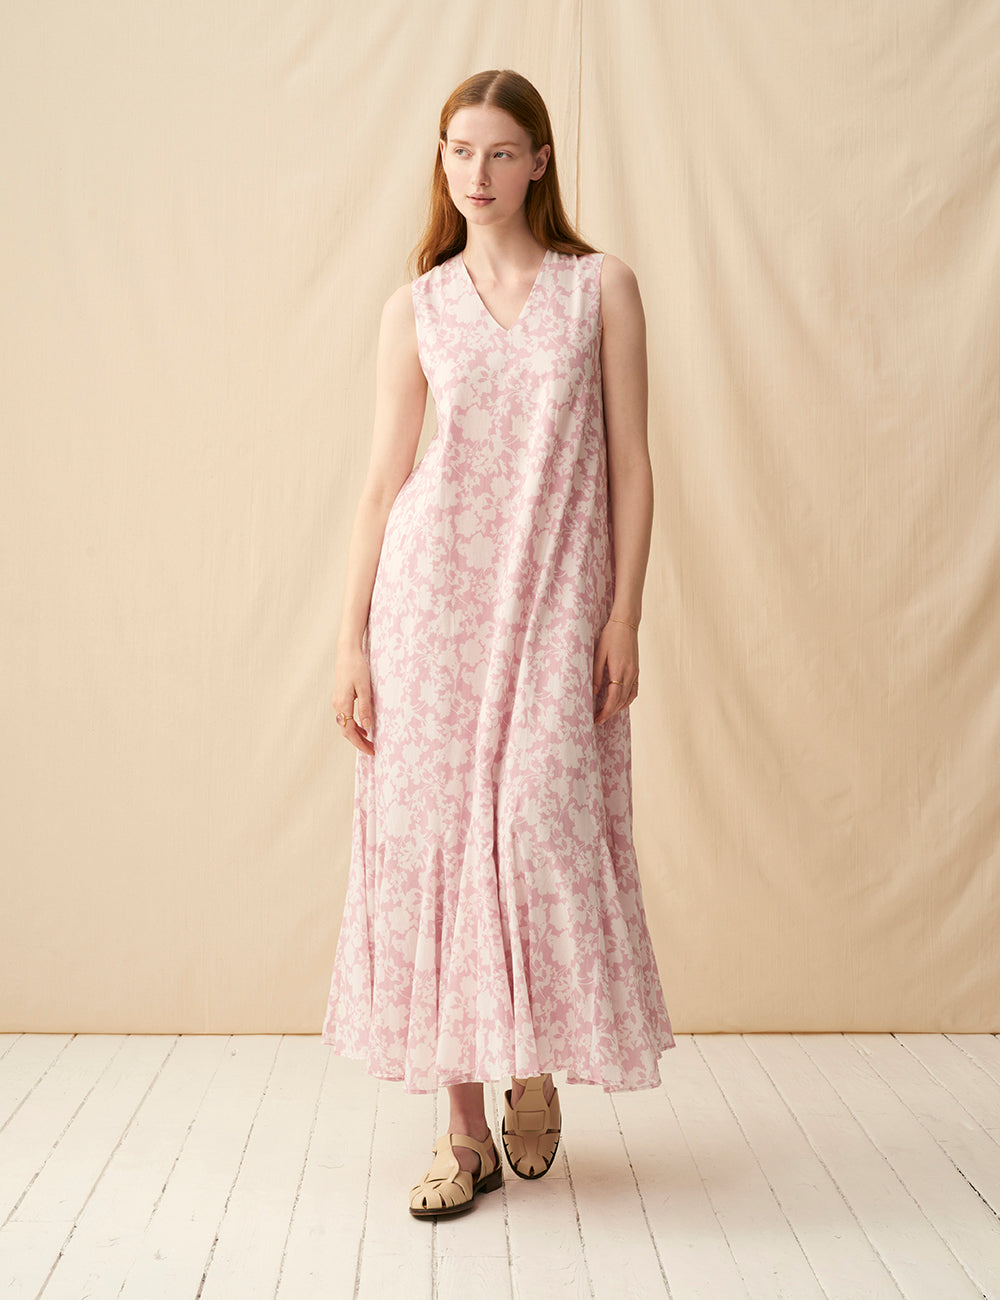 【予約】夏の月影のドレス <br>Garden Shadows/Pink